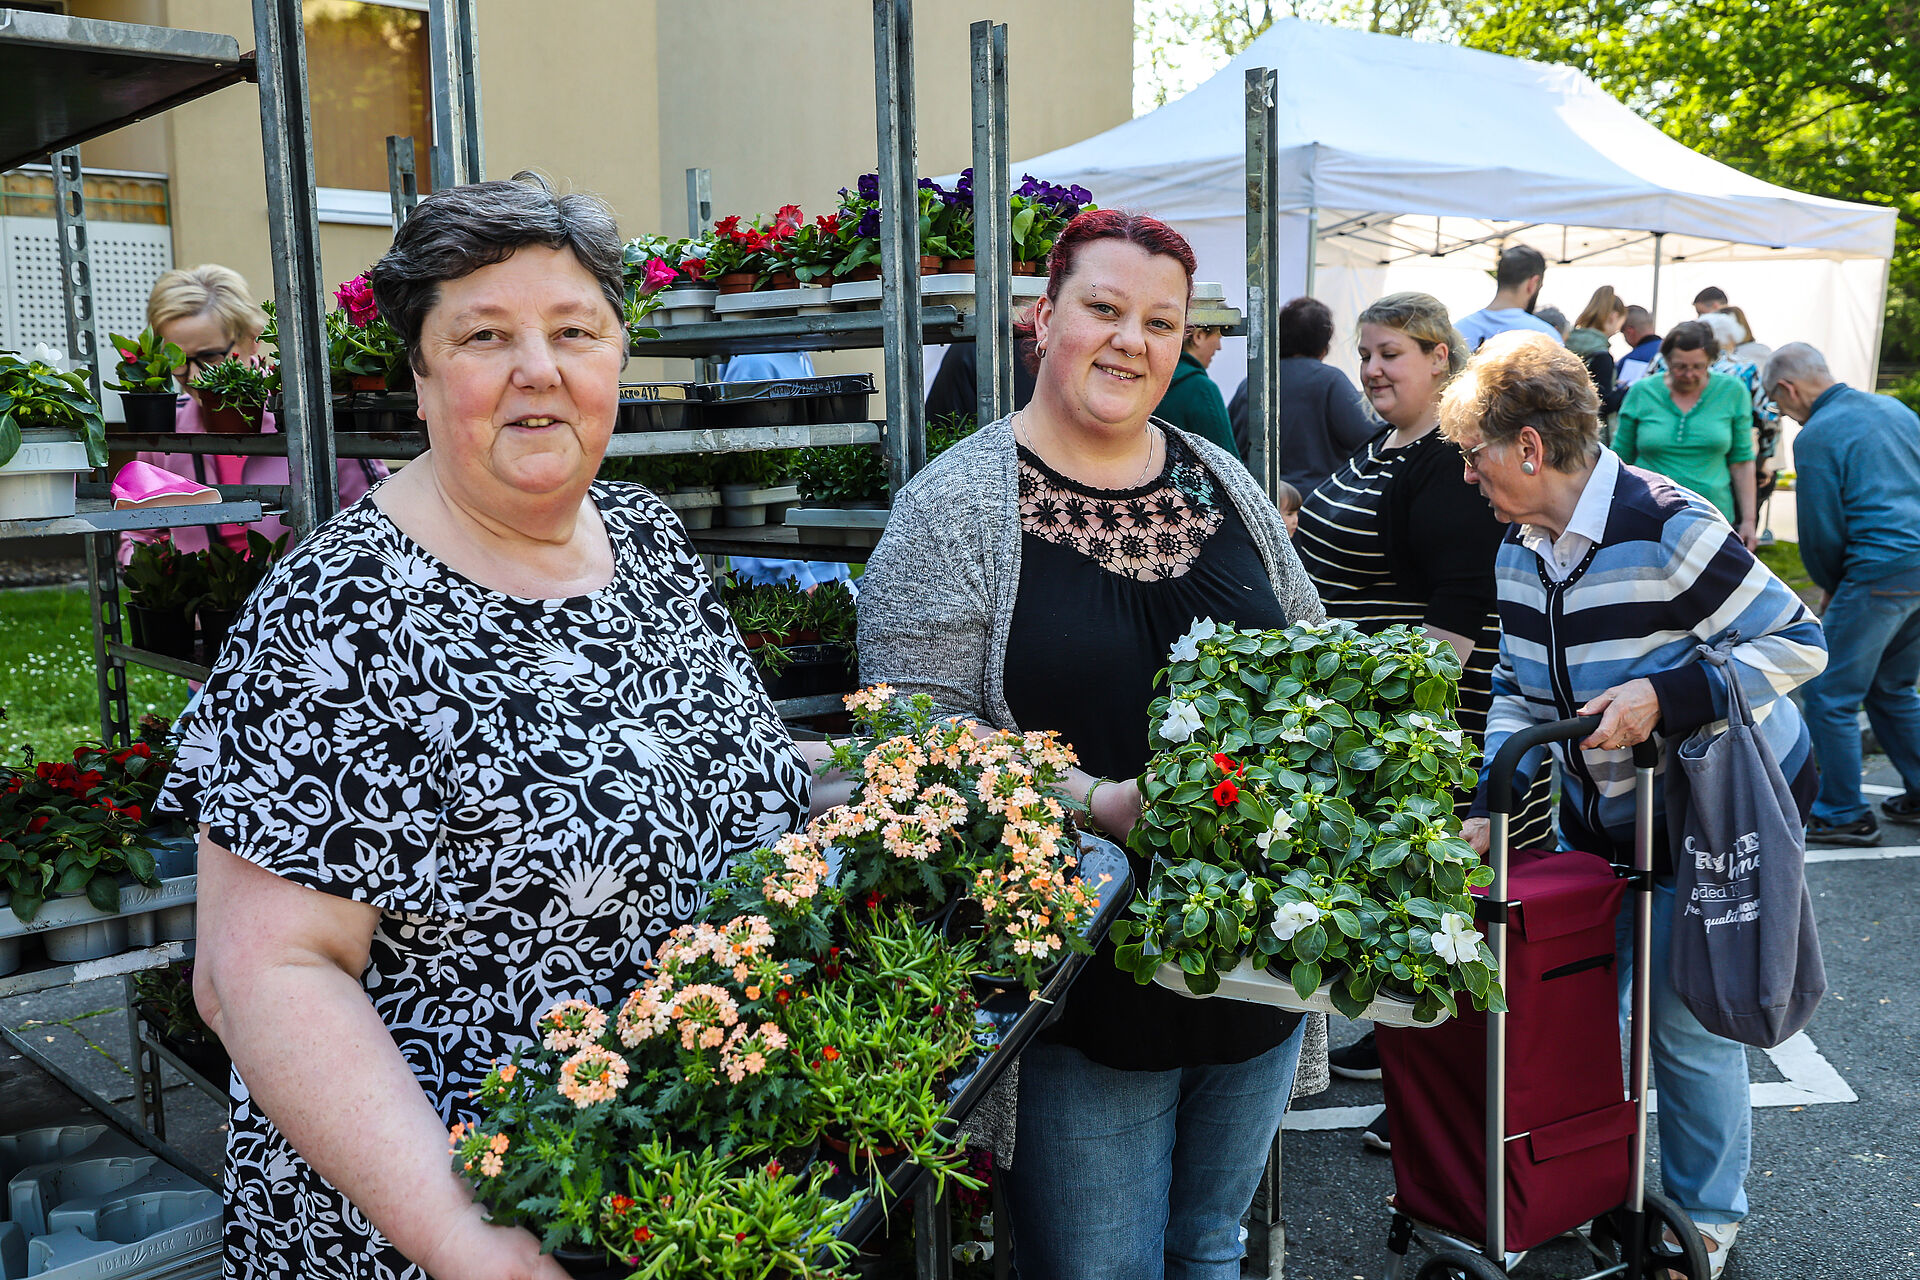 Zwei Frauen zeigen Behälter mit Balkonblumen während im Hintergrund weitere Menschen stehen